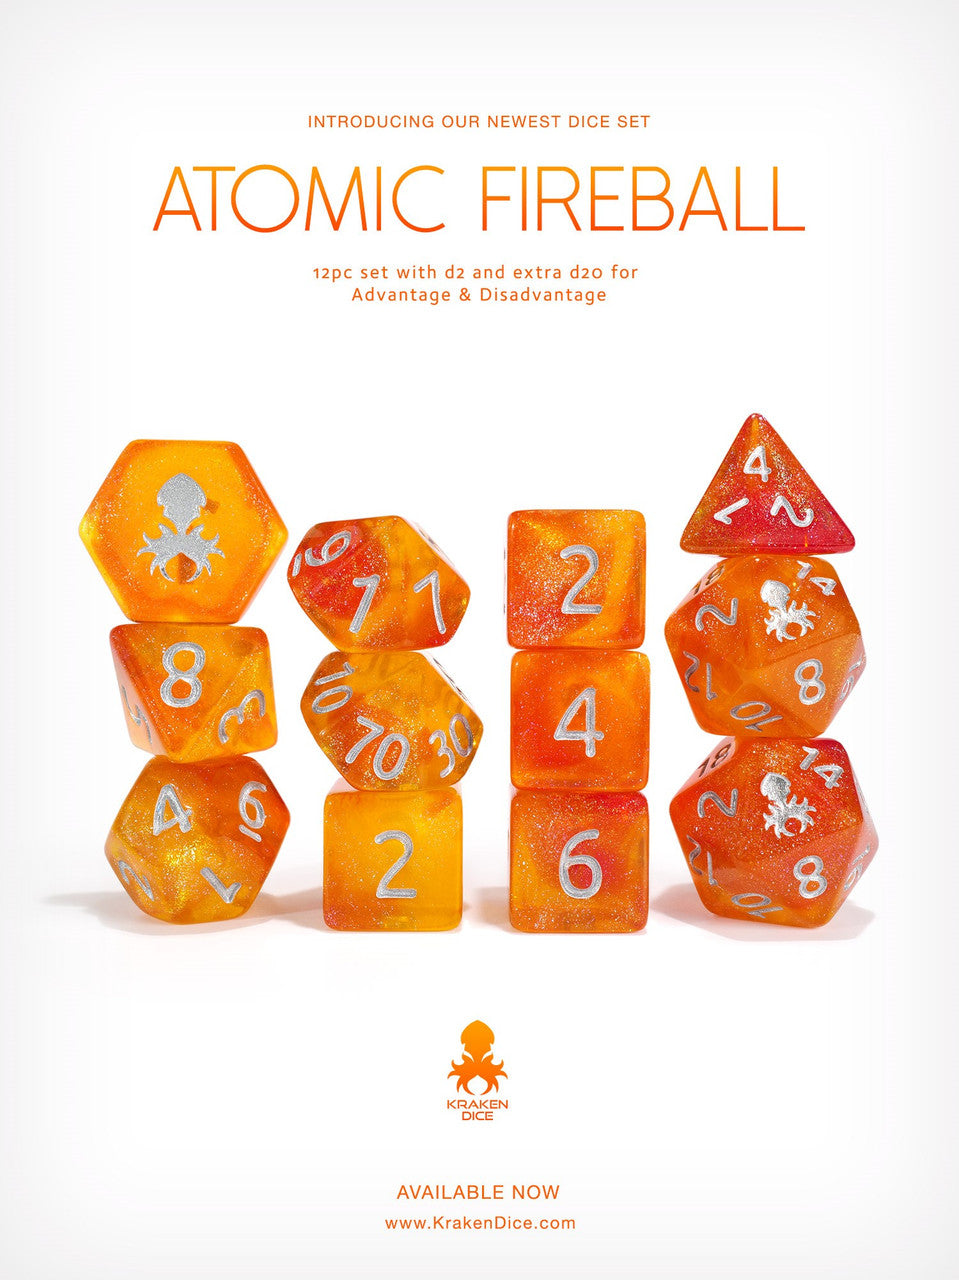 Kraken's Atomic Fireball 12pc Polyhedral Dice Set